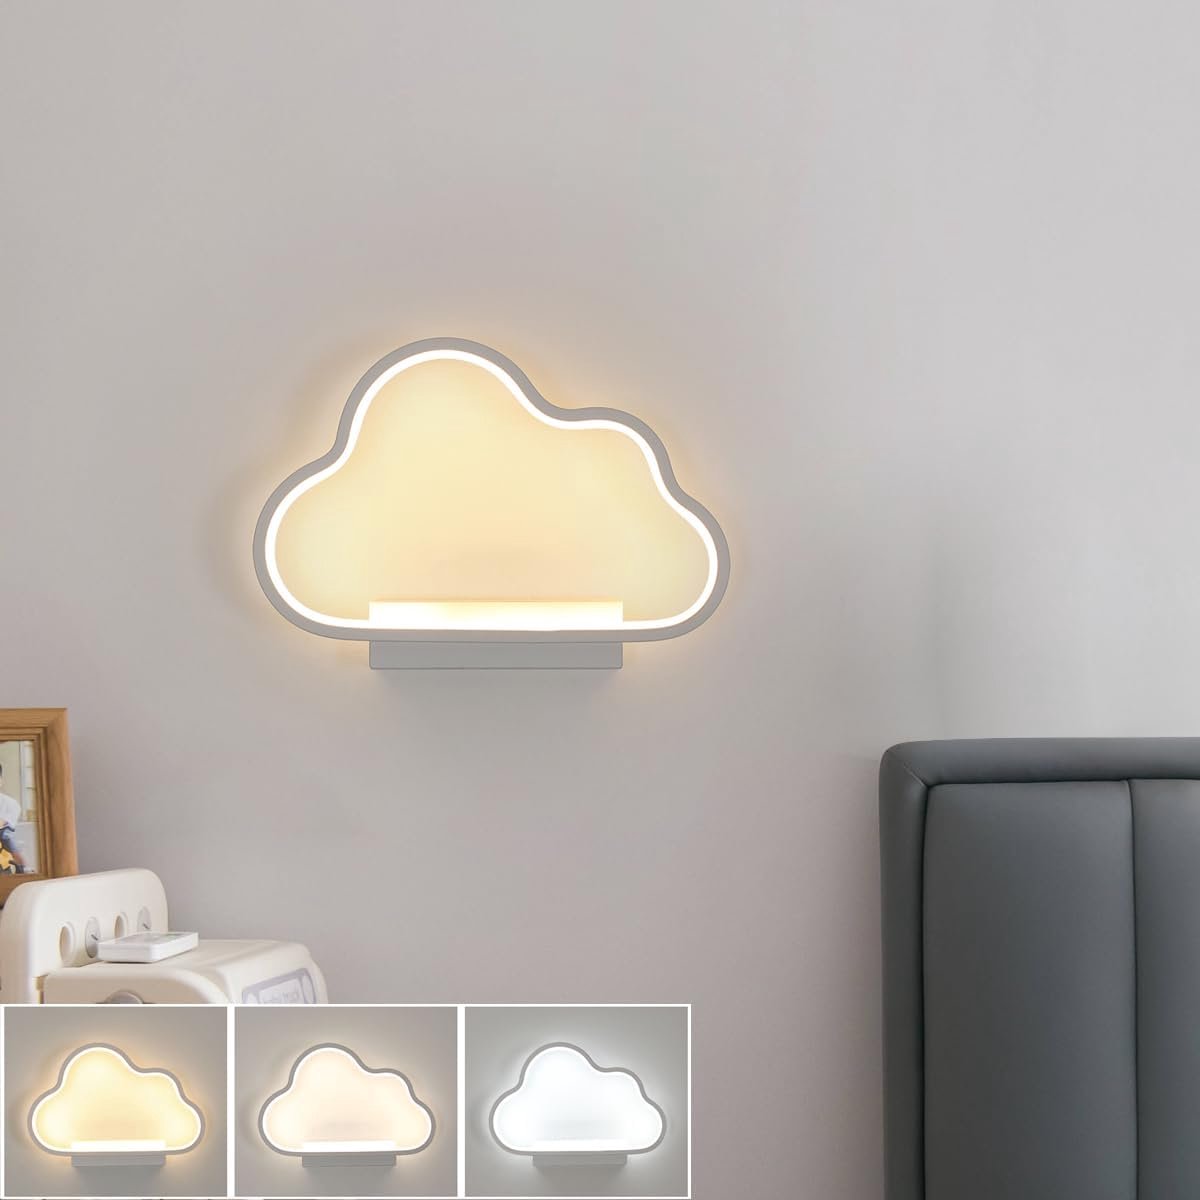 Goeco wandlamp - 28cm - Medium - LED - 20W - RGB - 3000K/4500K/6500K - acrylwolkvormige wandlamp - voor kinderslaapkamer, woonkamer, hal